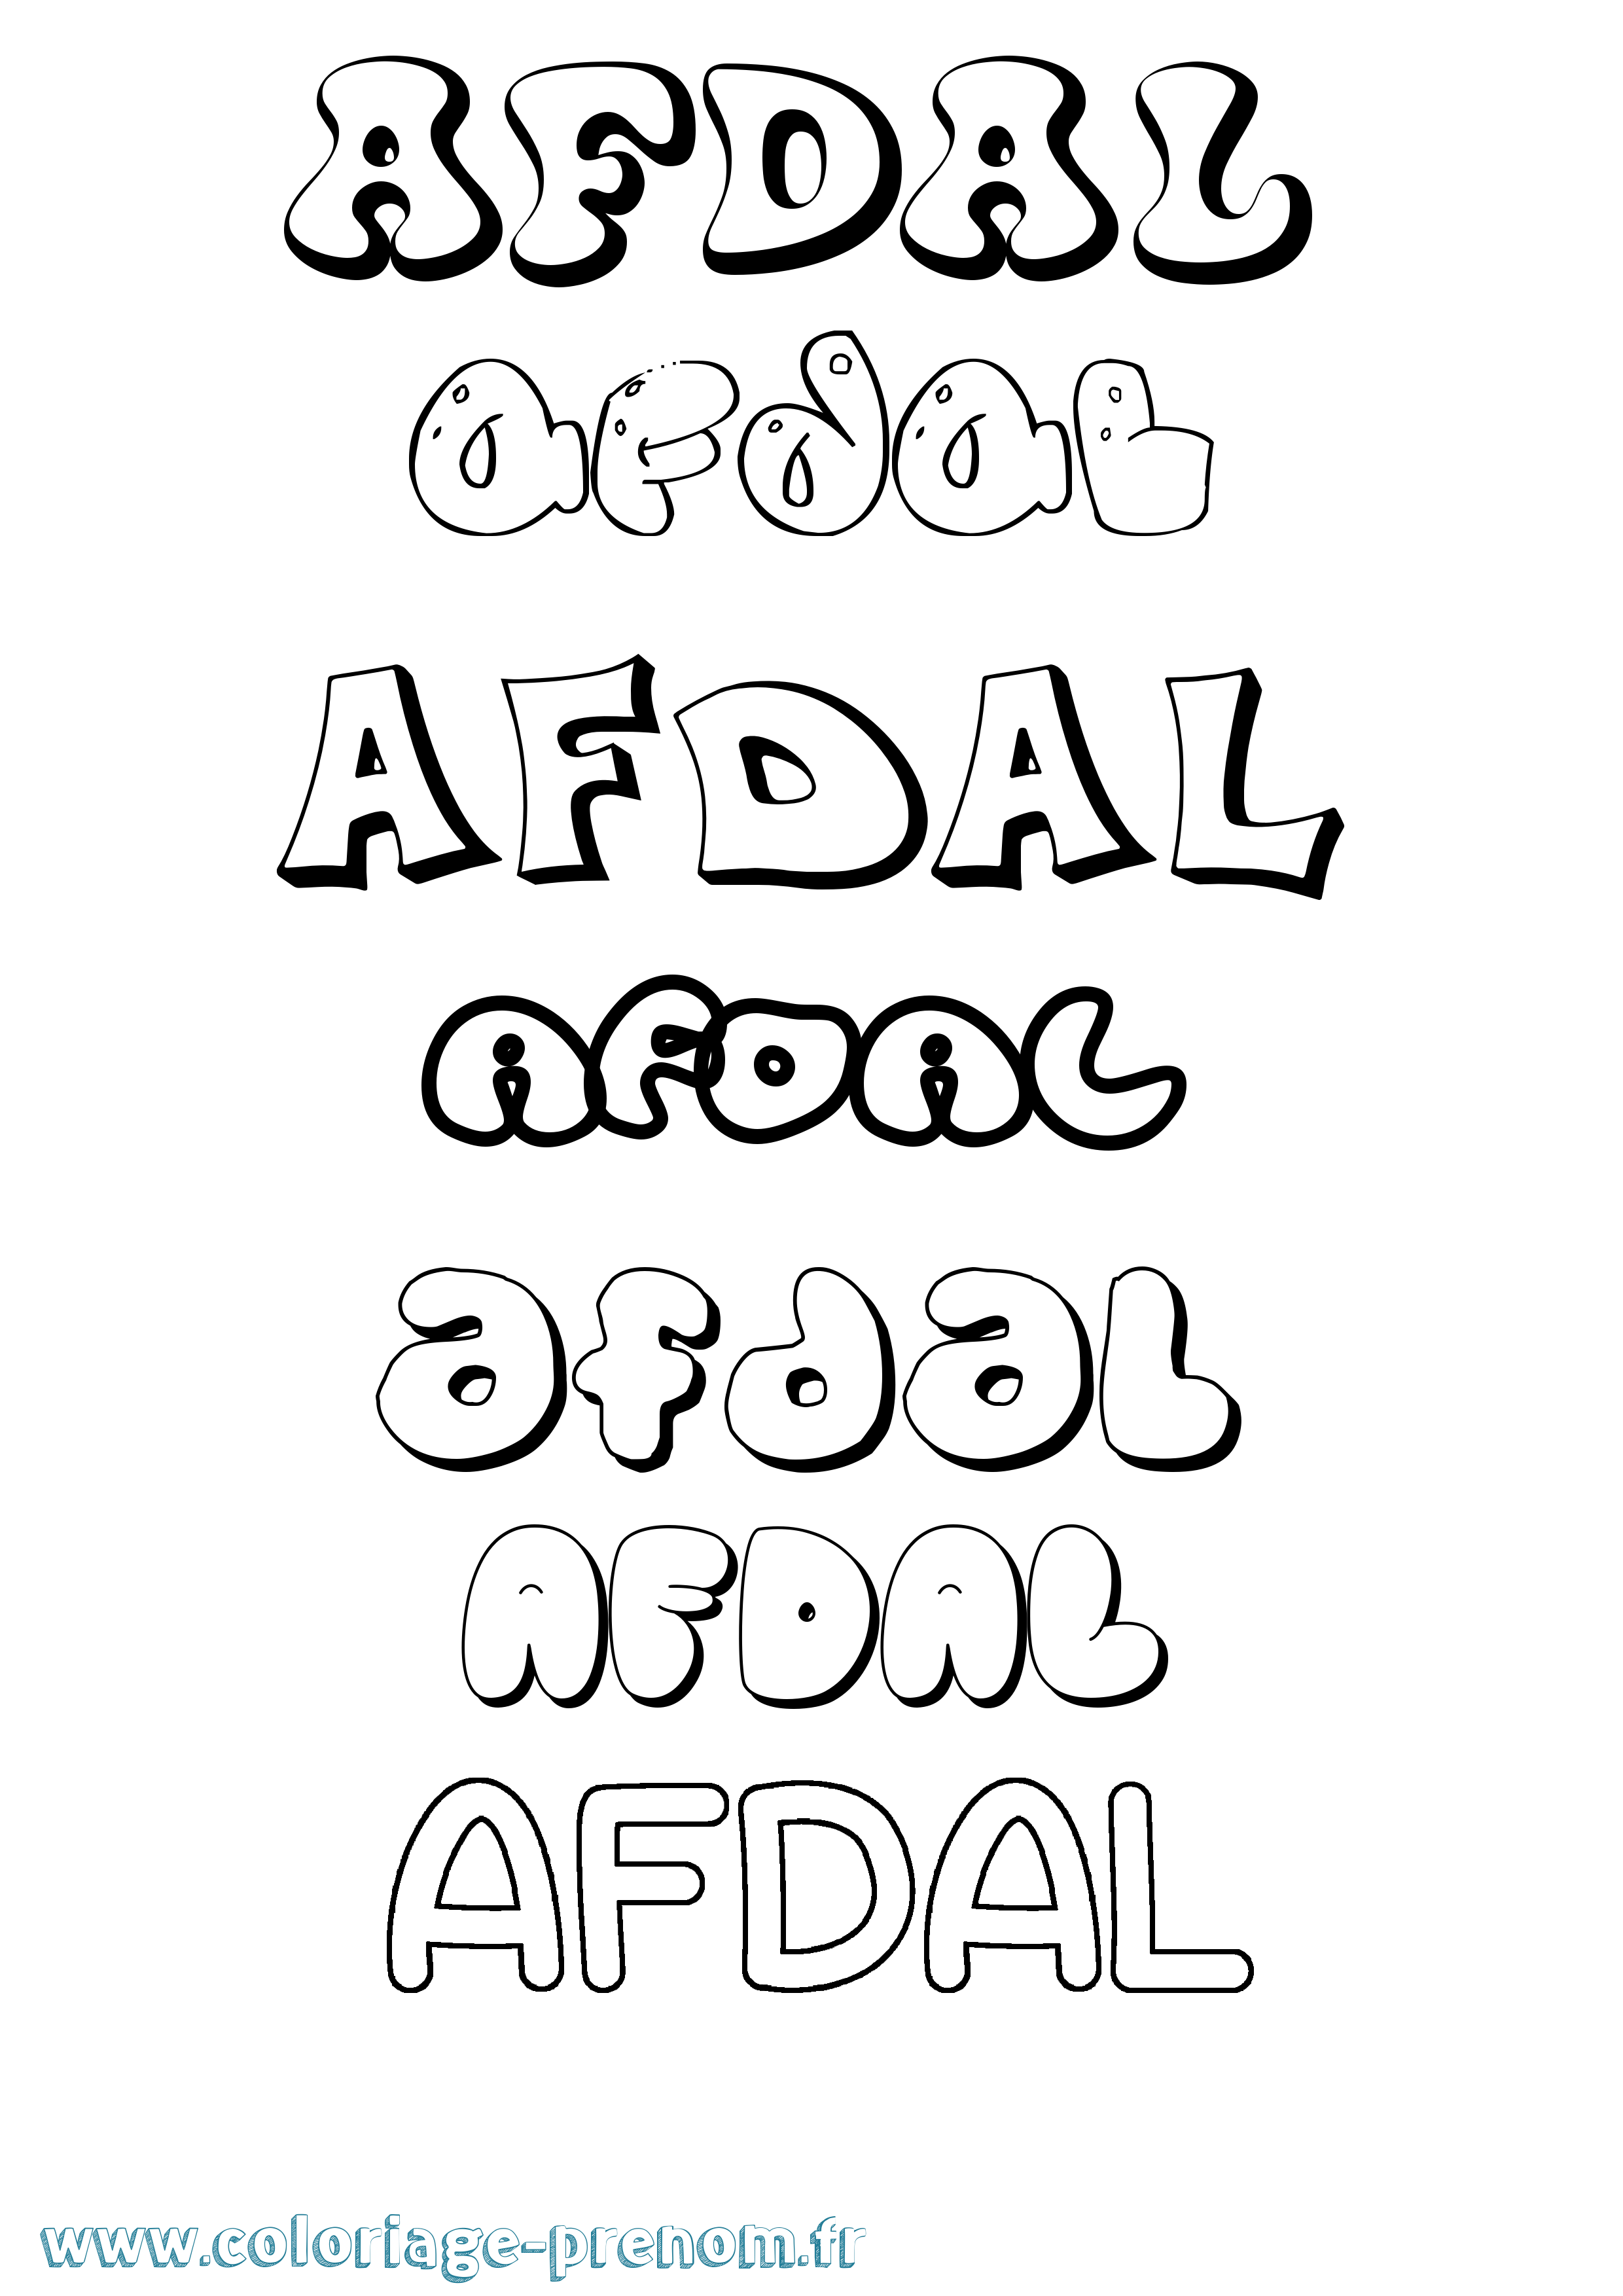 Coloriage prénom Afdal Bubble